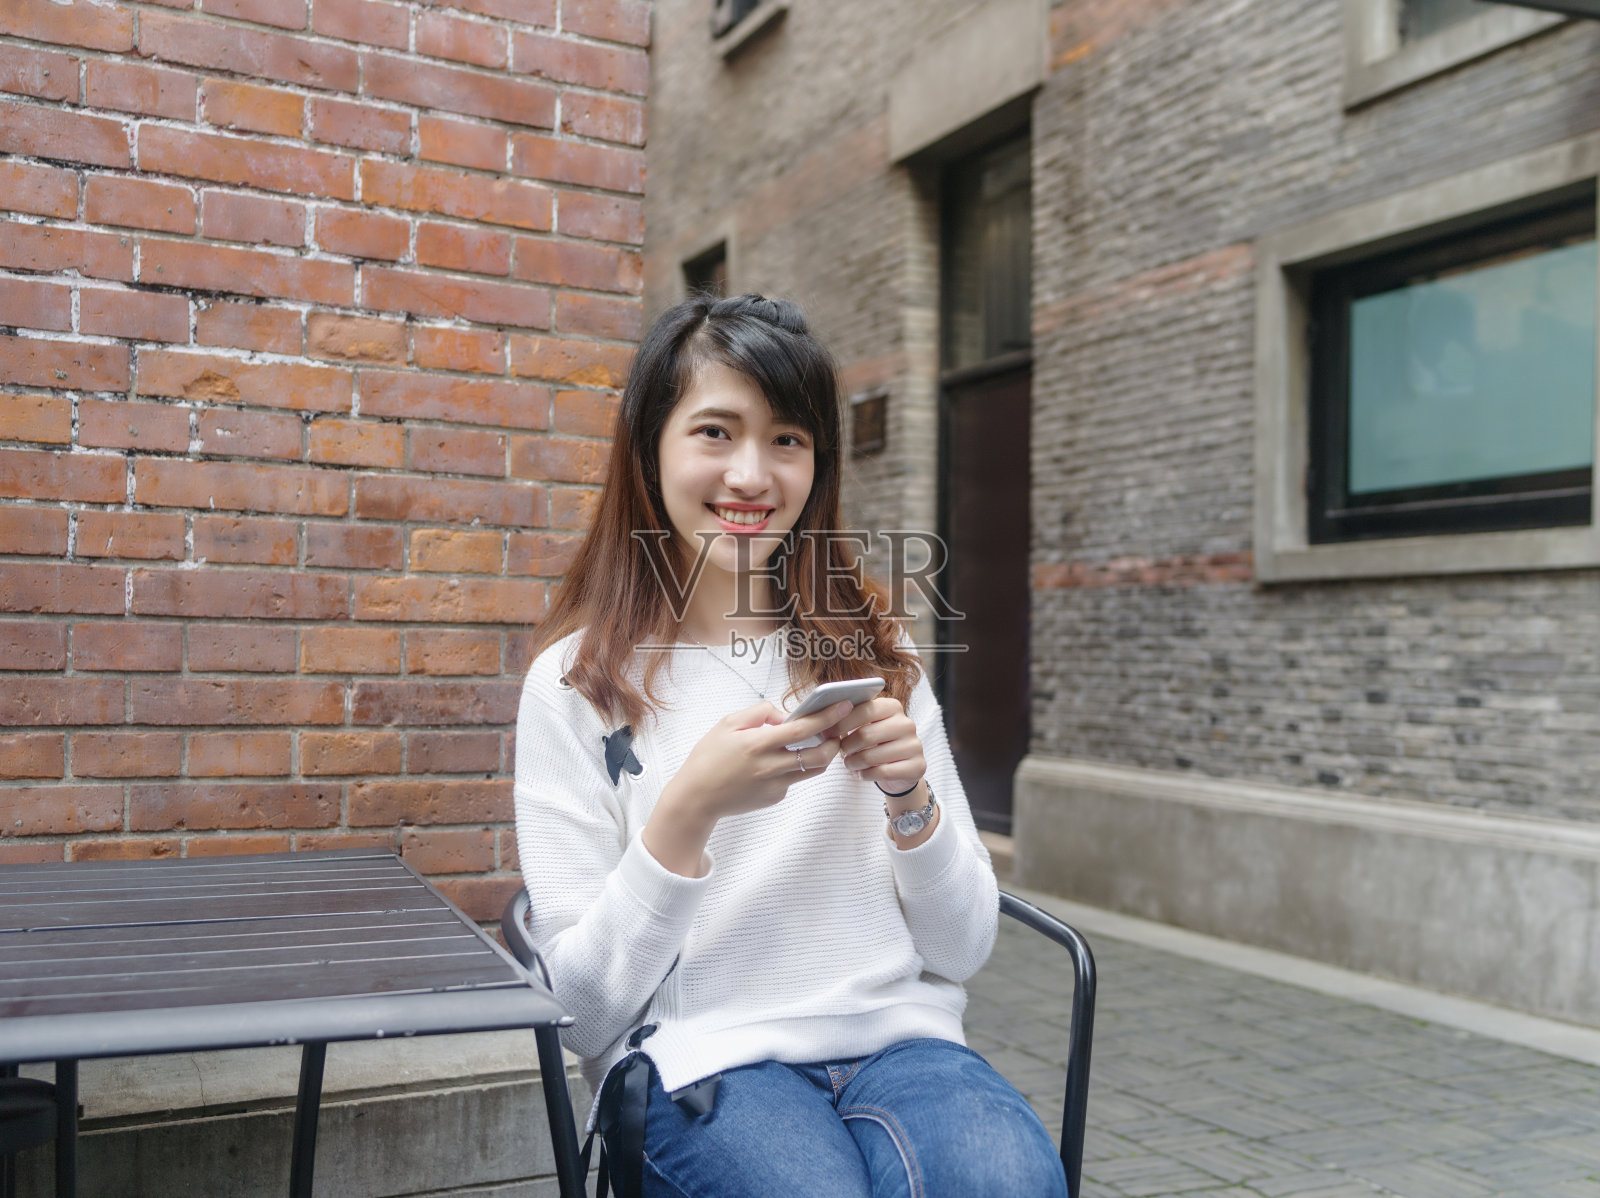 上海新天地，一名年轻美丽的中国女子穿着白色毛衣和蓝色牛仔裤坐在桌子前使用手机。照片摄影图片